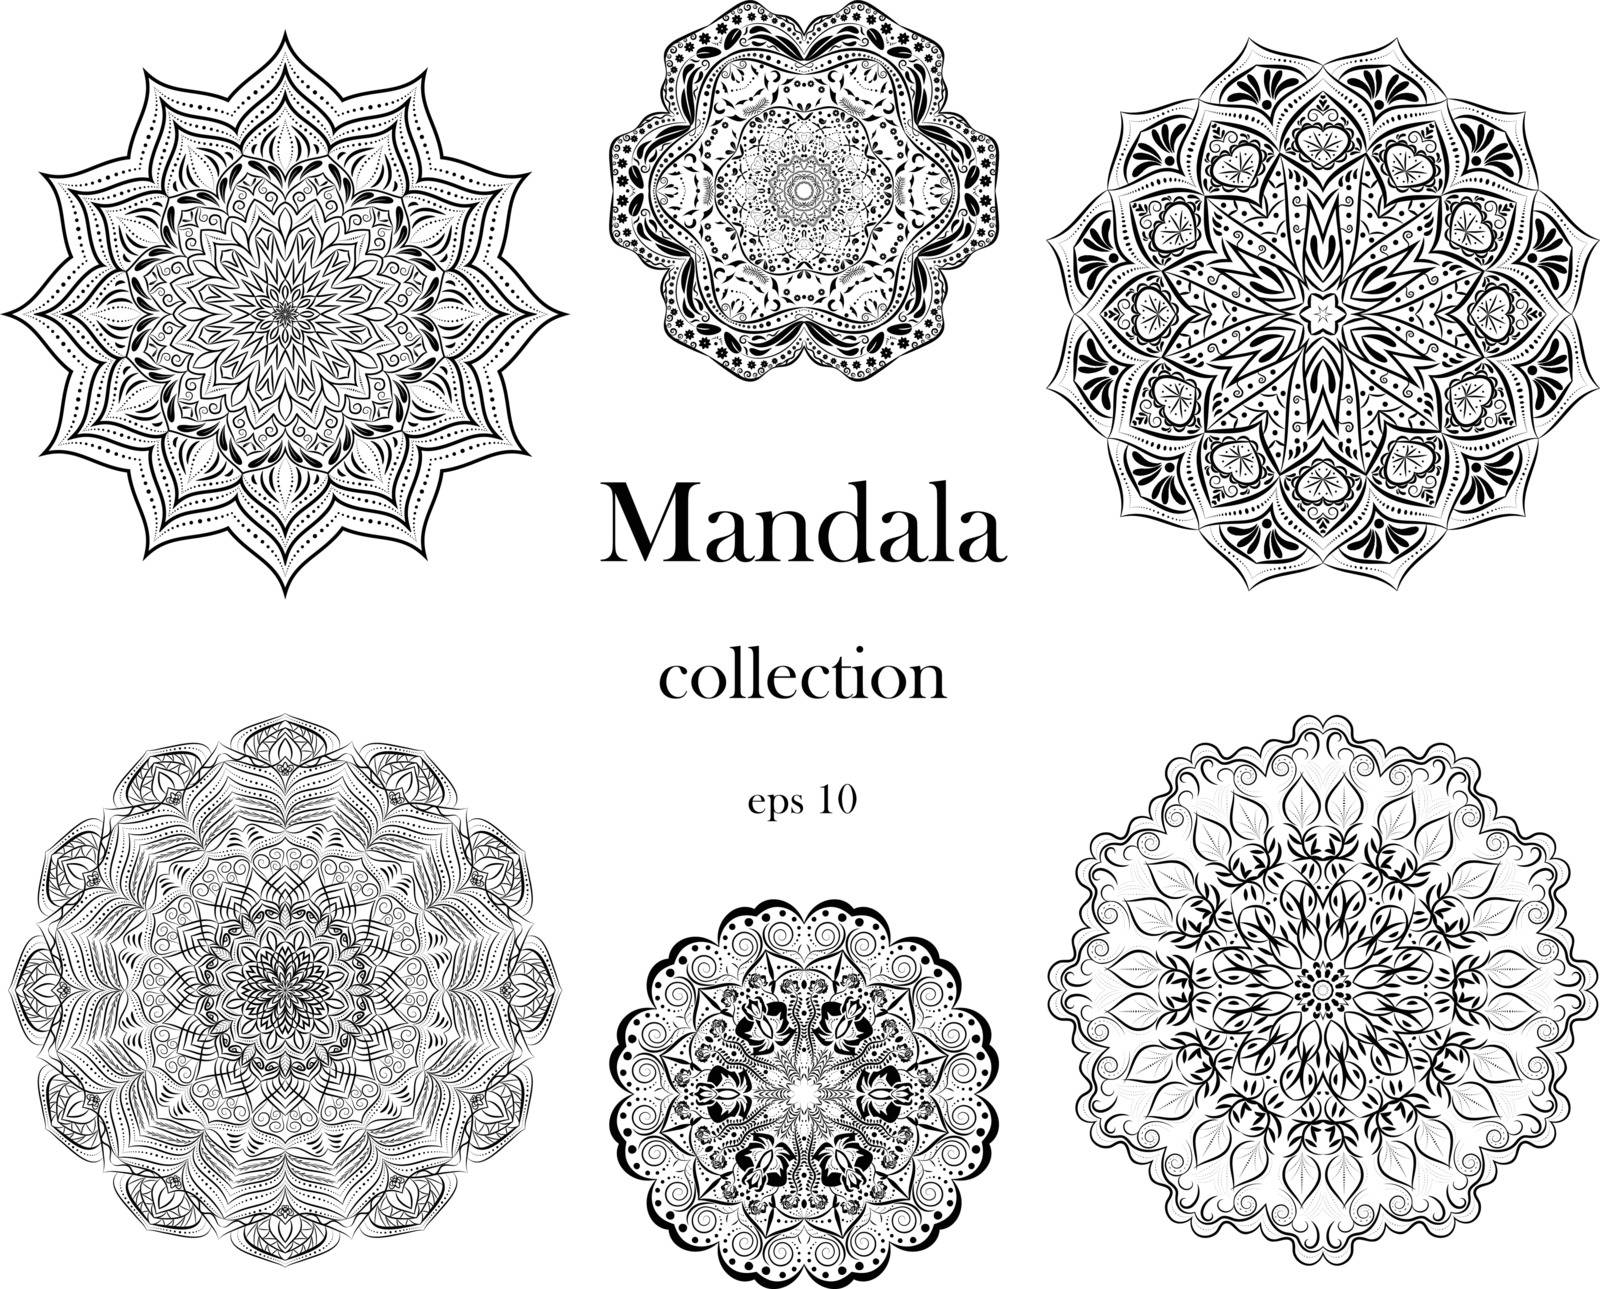 Mandala design set on white isolated background. by GraffiTimi